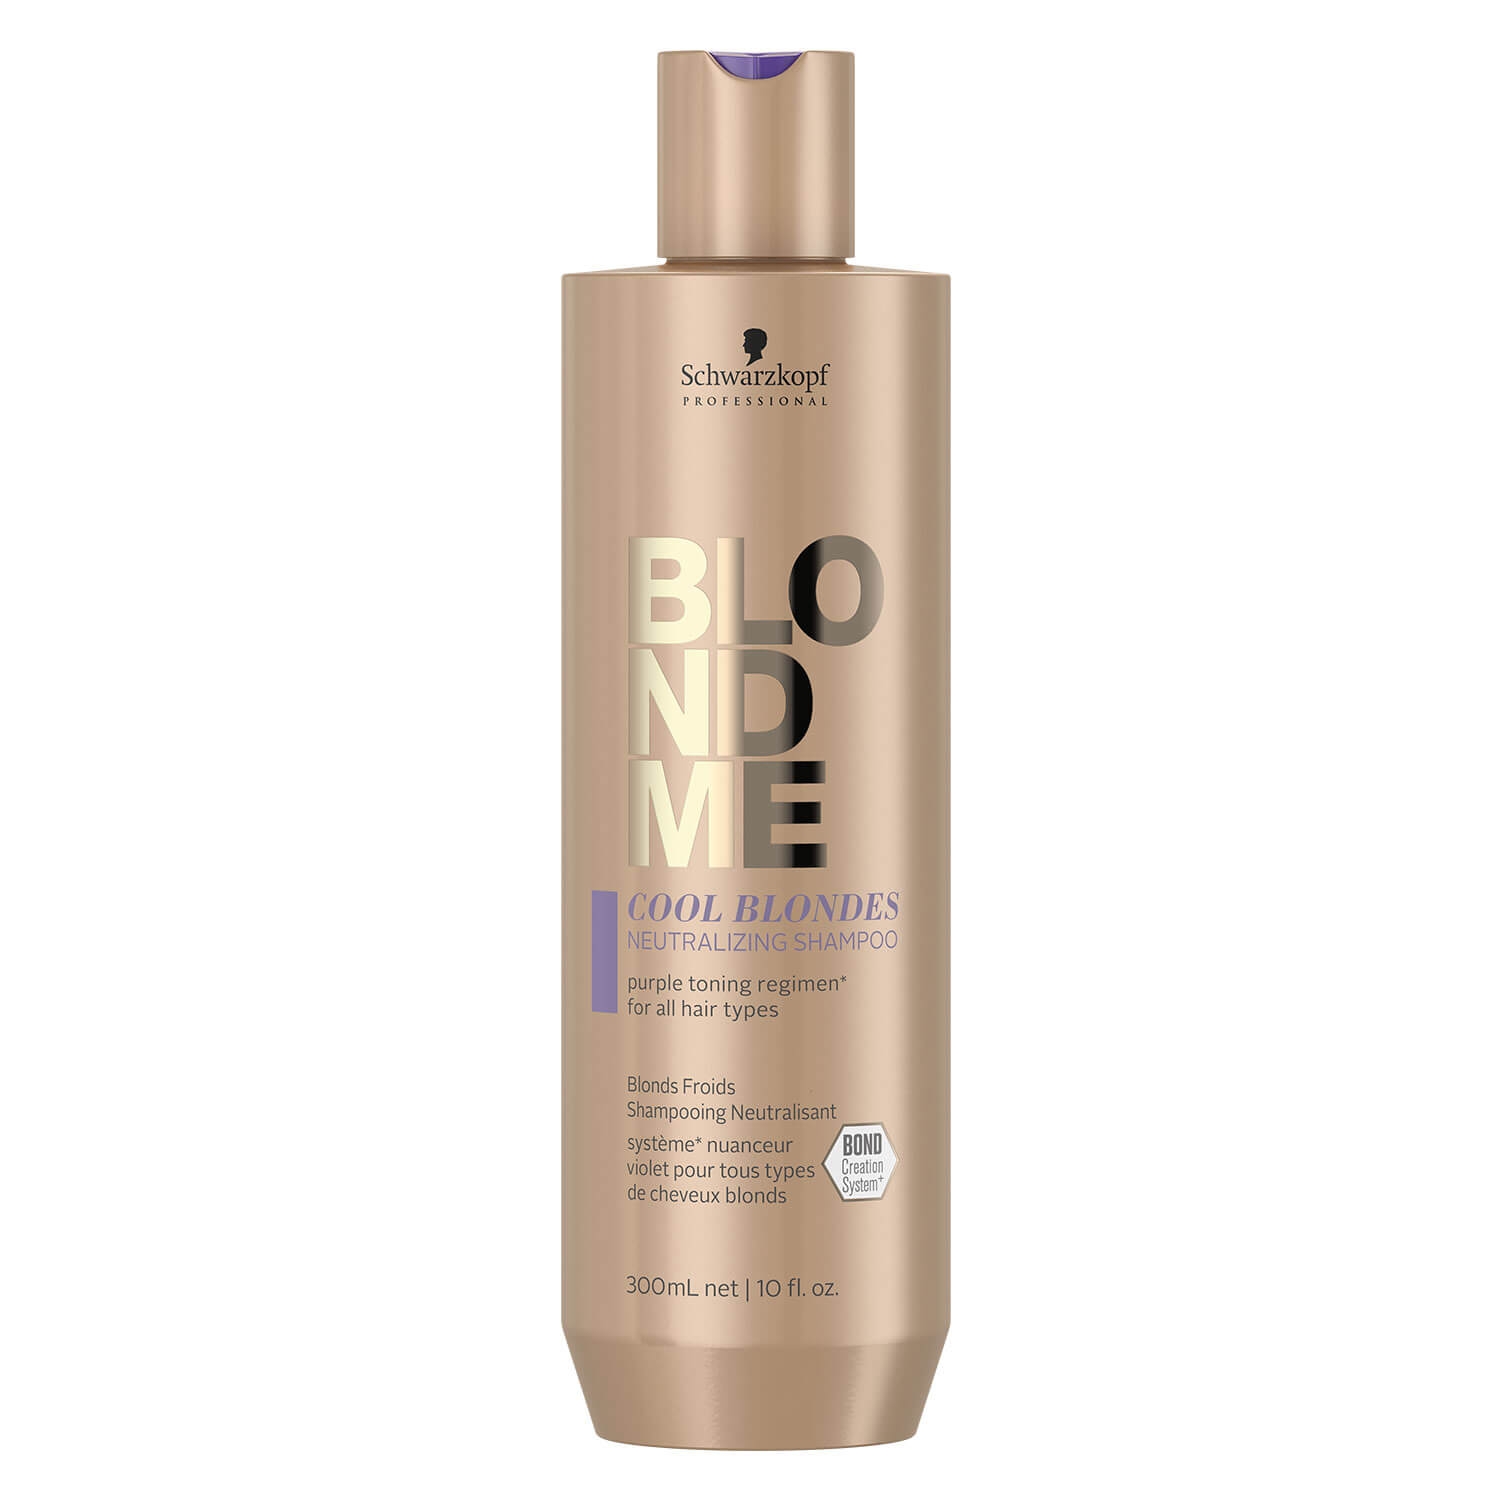 Produktbild von Blondme - Cool Blondes Neutralizing Shampoo